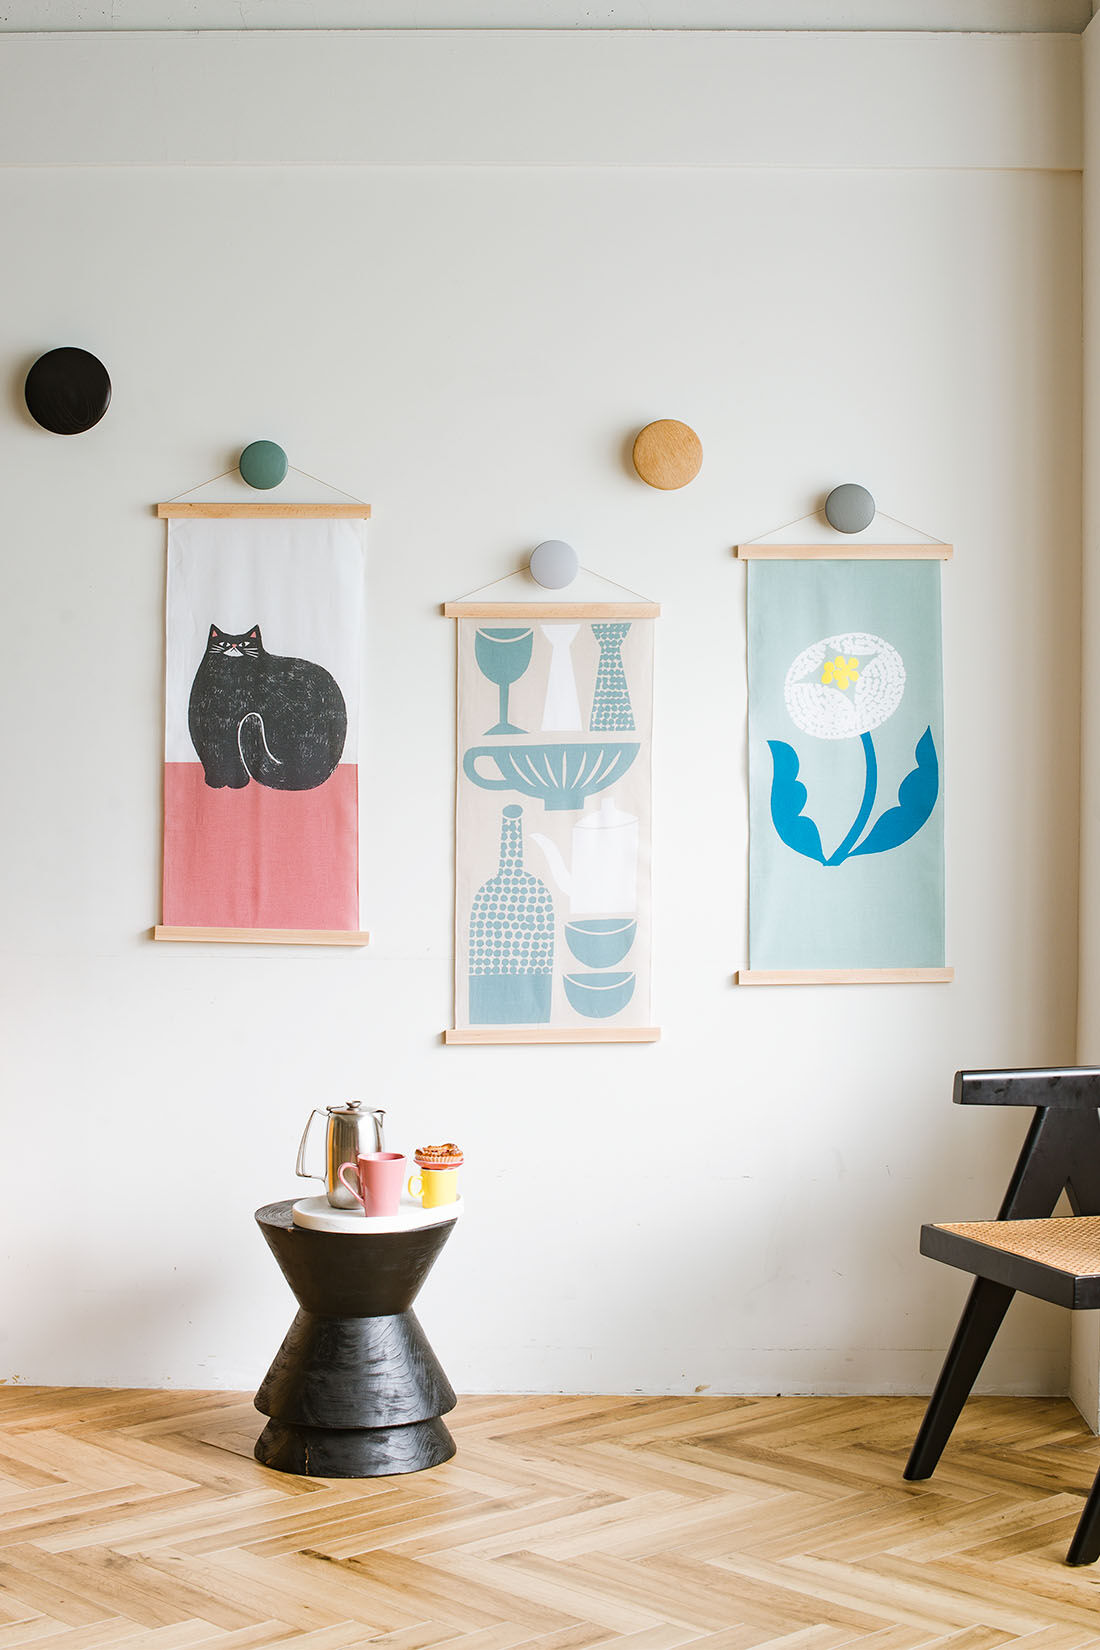 ミニツク|暮らしを彩る 家具職人が作った 手ぬぐいポスターハンガー|手ぬぐいやポスターなどB3サイズまで挟んで飾ることができます。